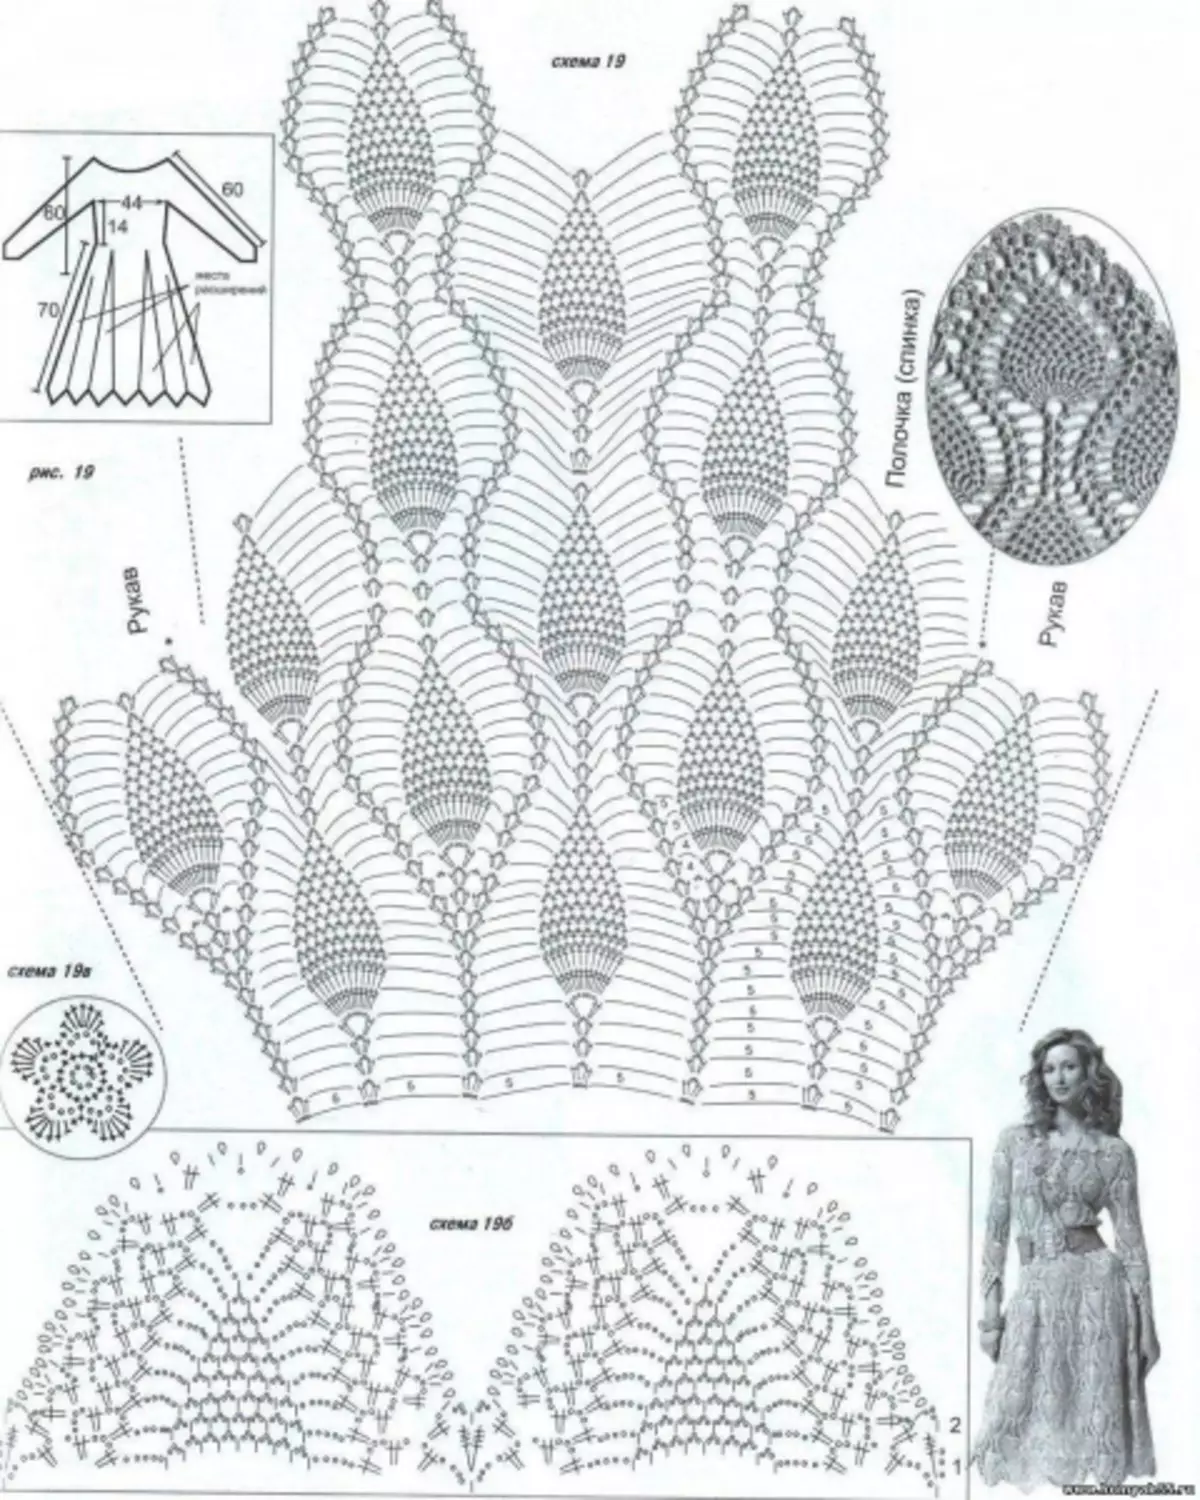 Тунички крошник: Шема и опис плетења филета са фотографијама